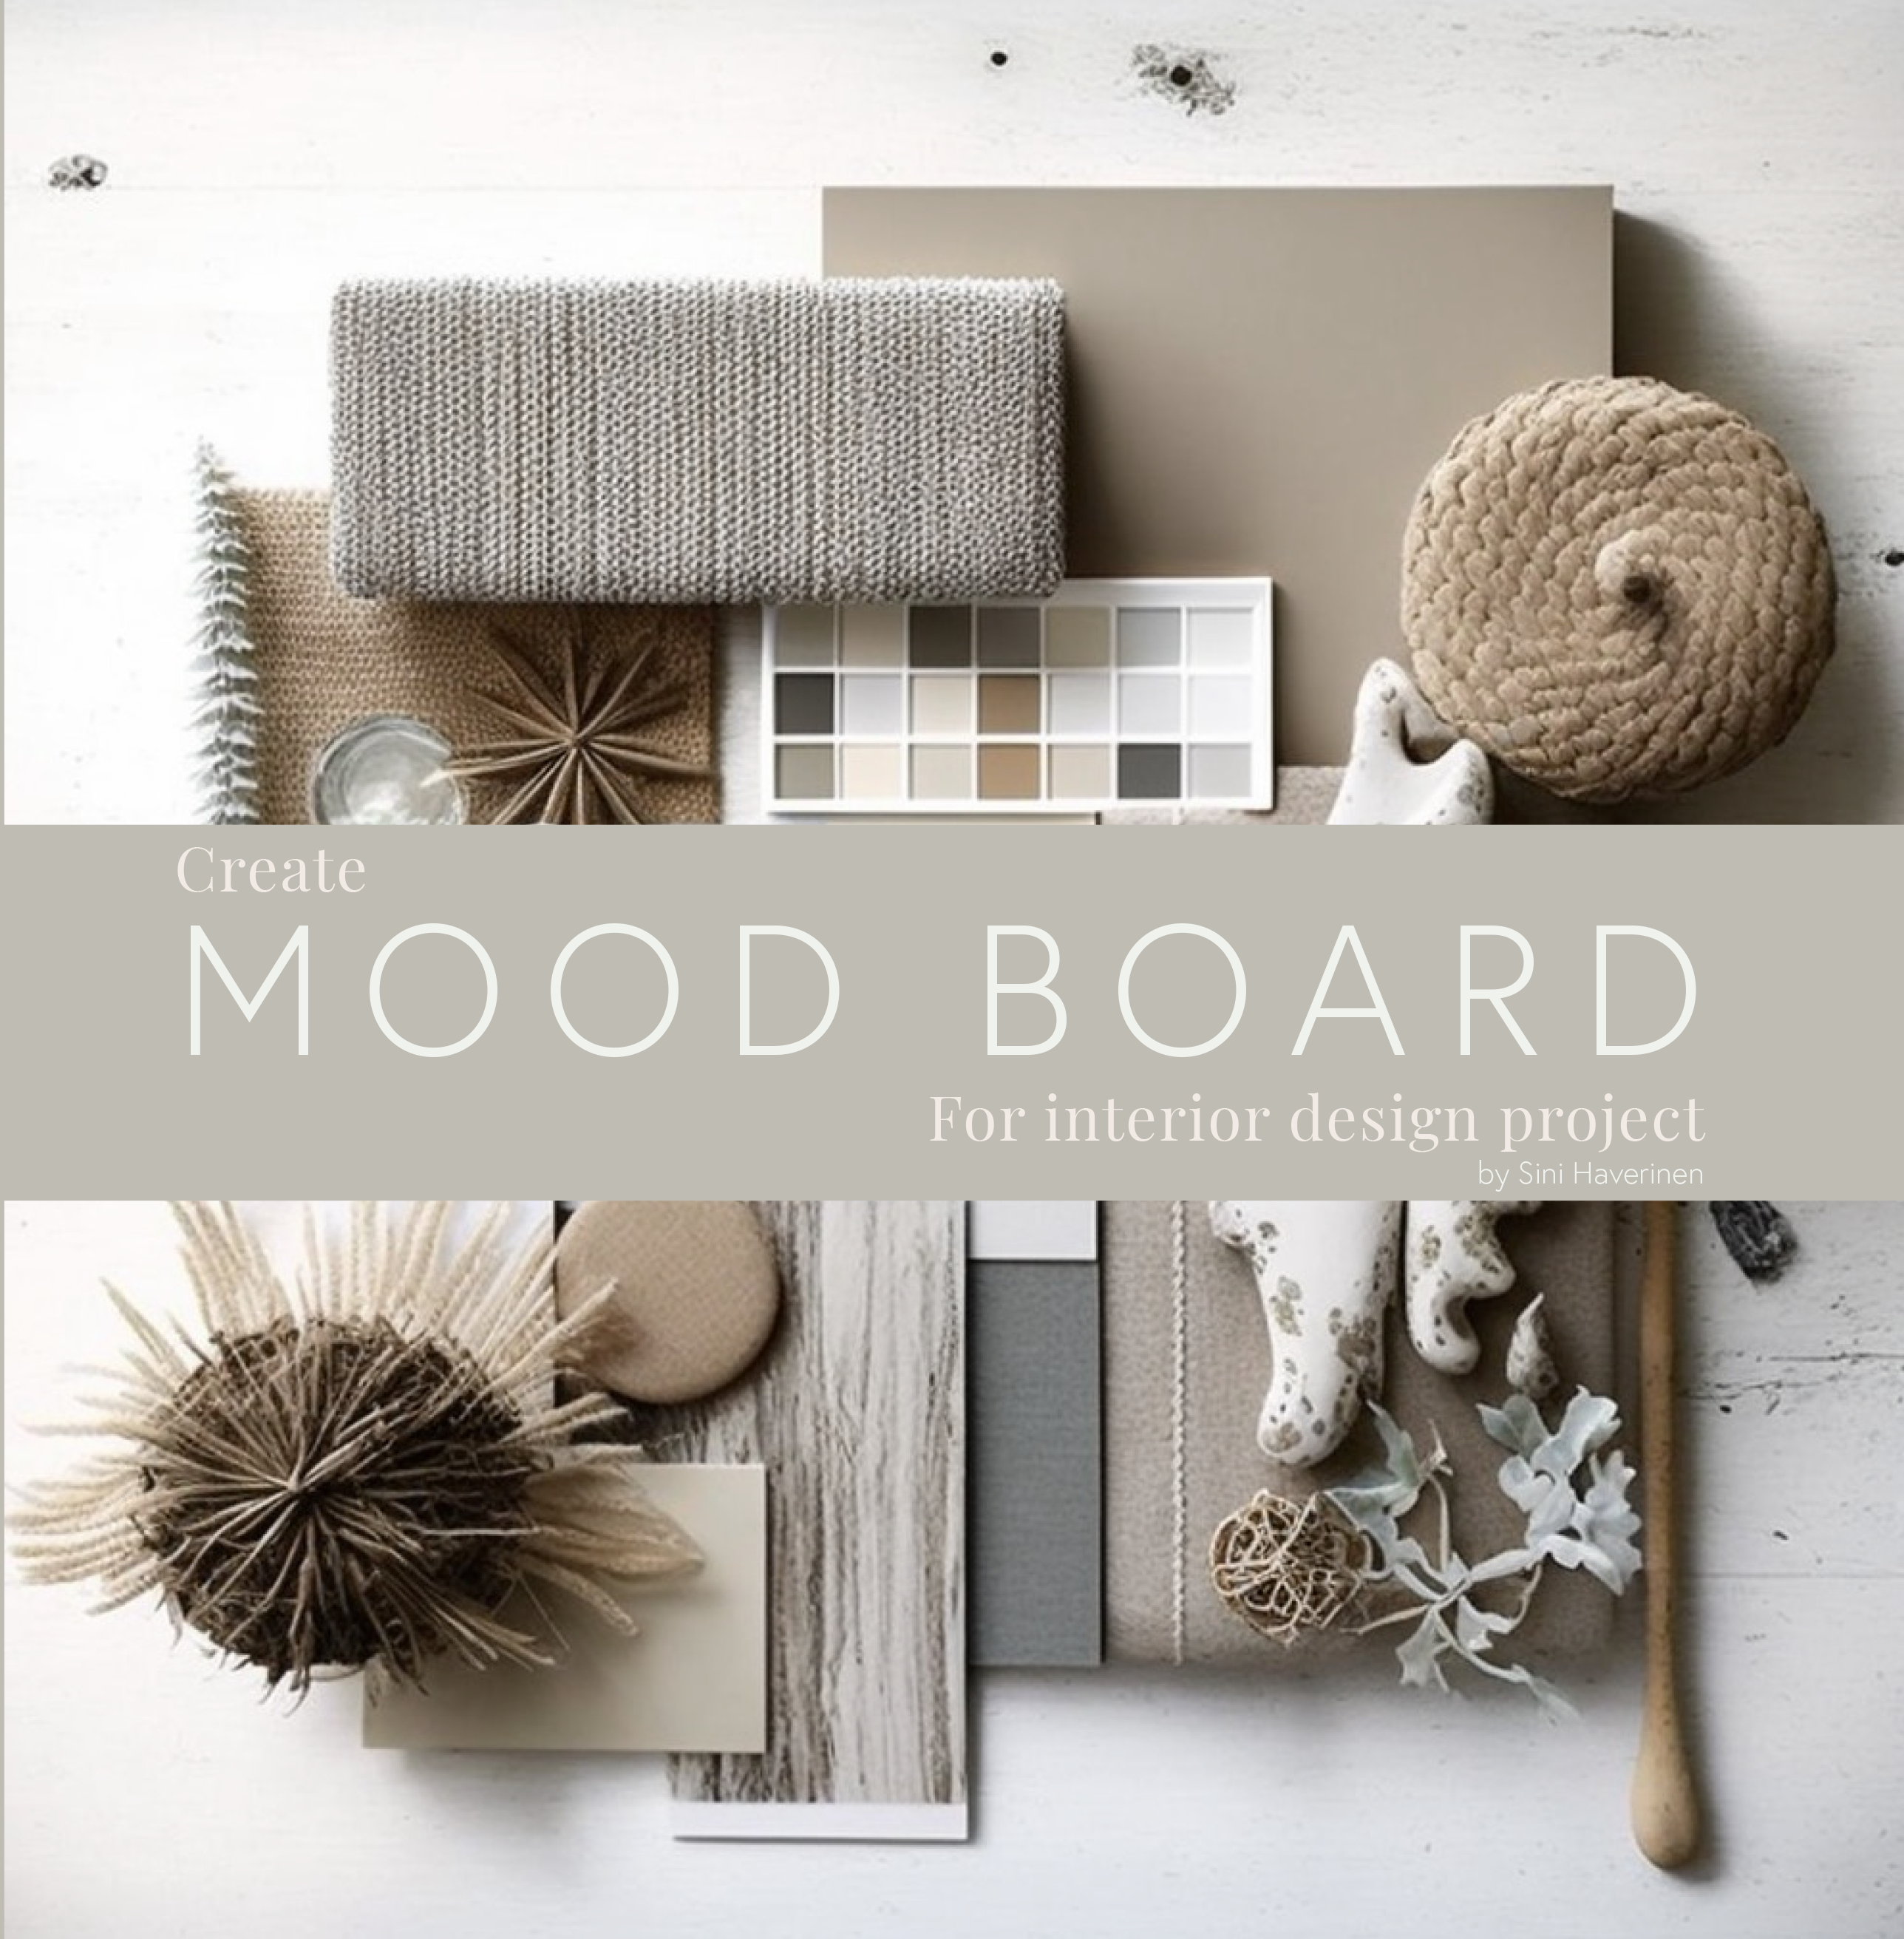  Create mood board for interior design project